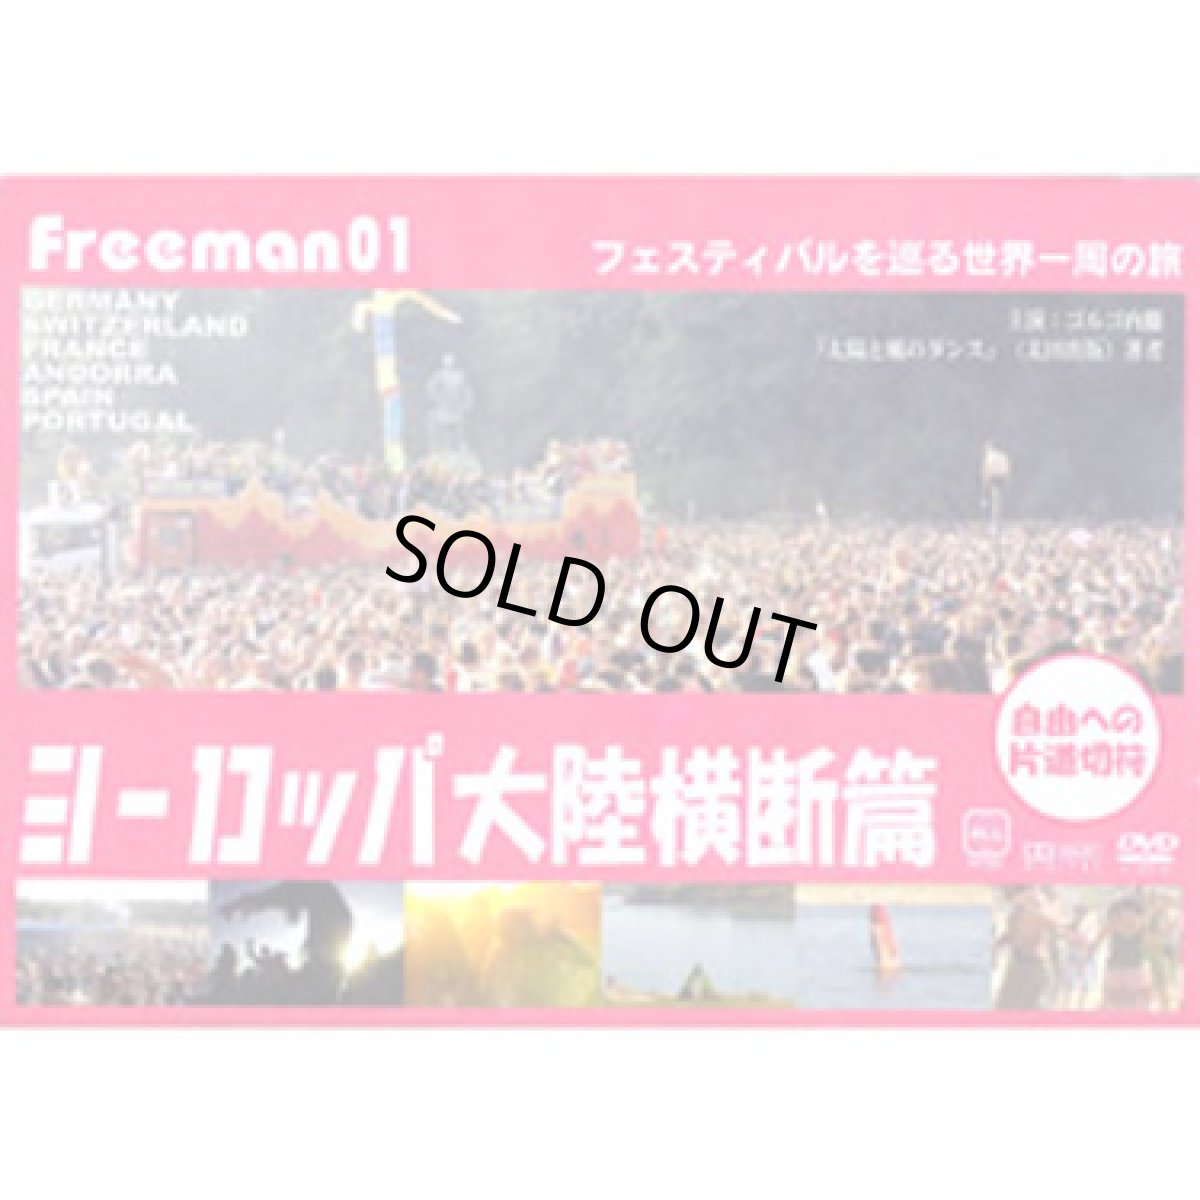 画像1: DVD「Freeman 02-フェスティバルを巡る世界一周の旅〜ヨーロッパ大陸横断篇〜」 (1)